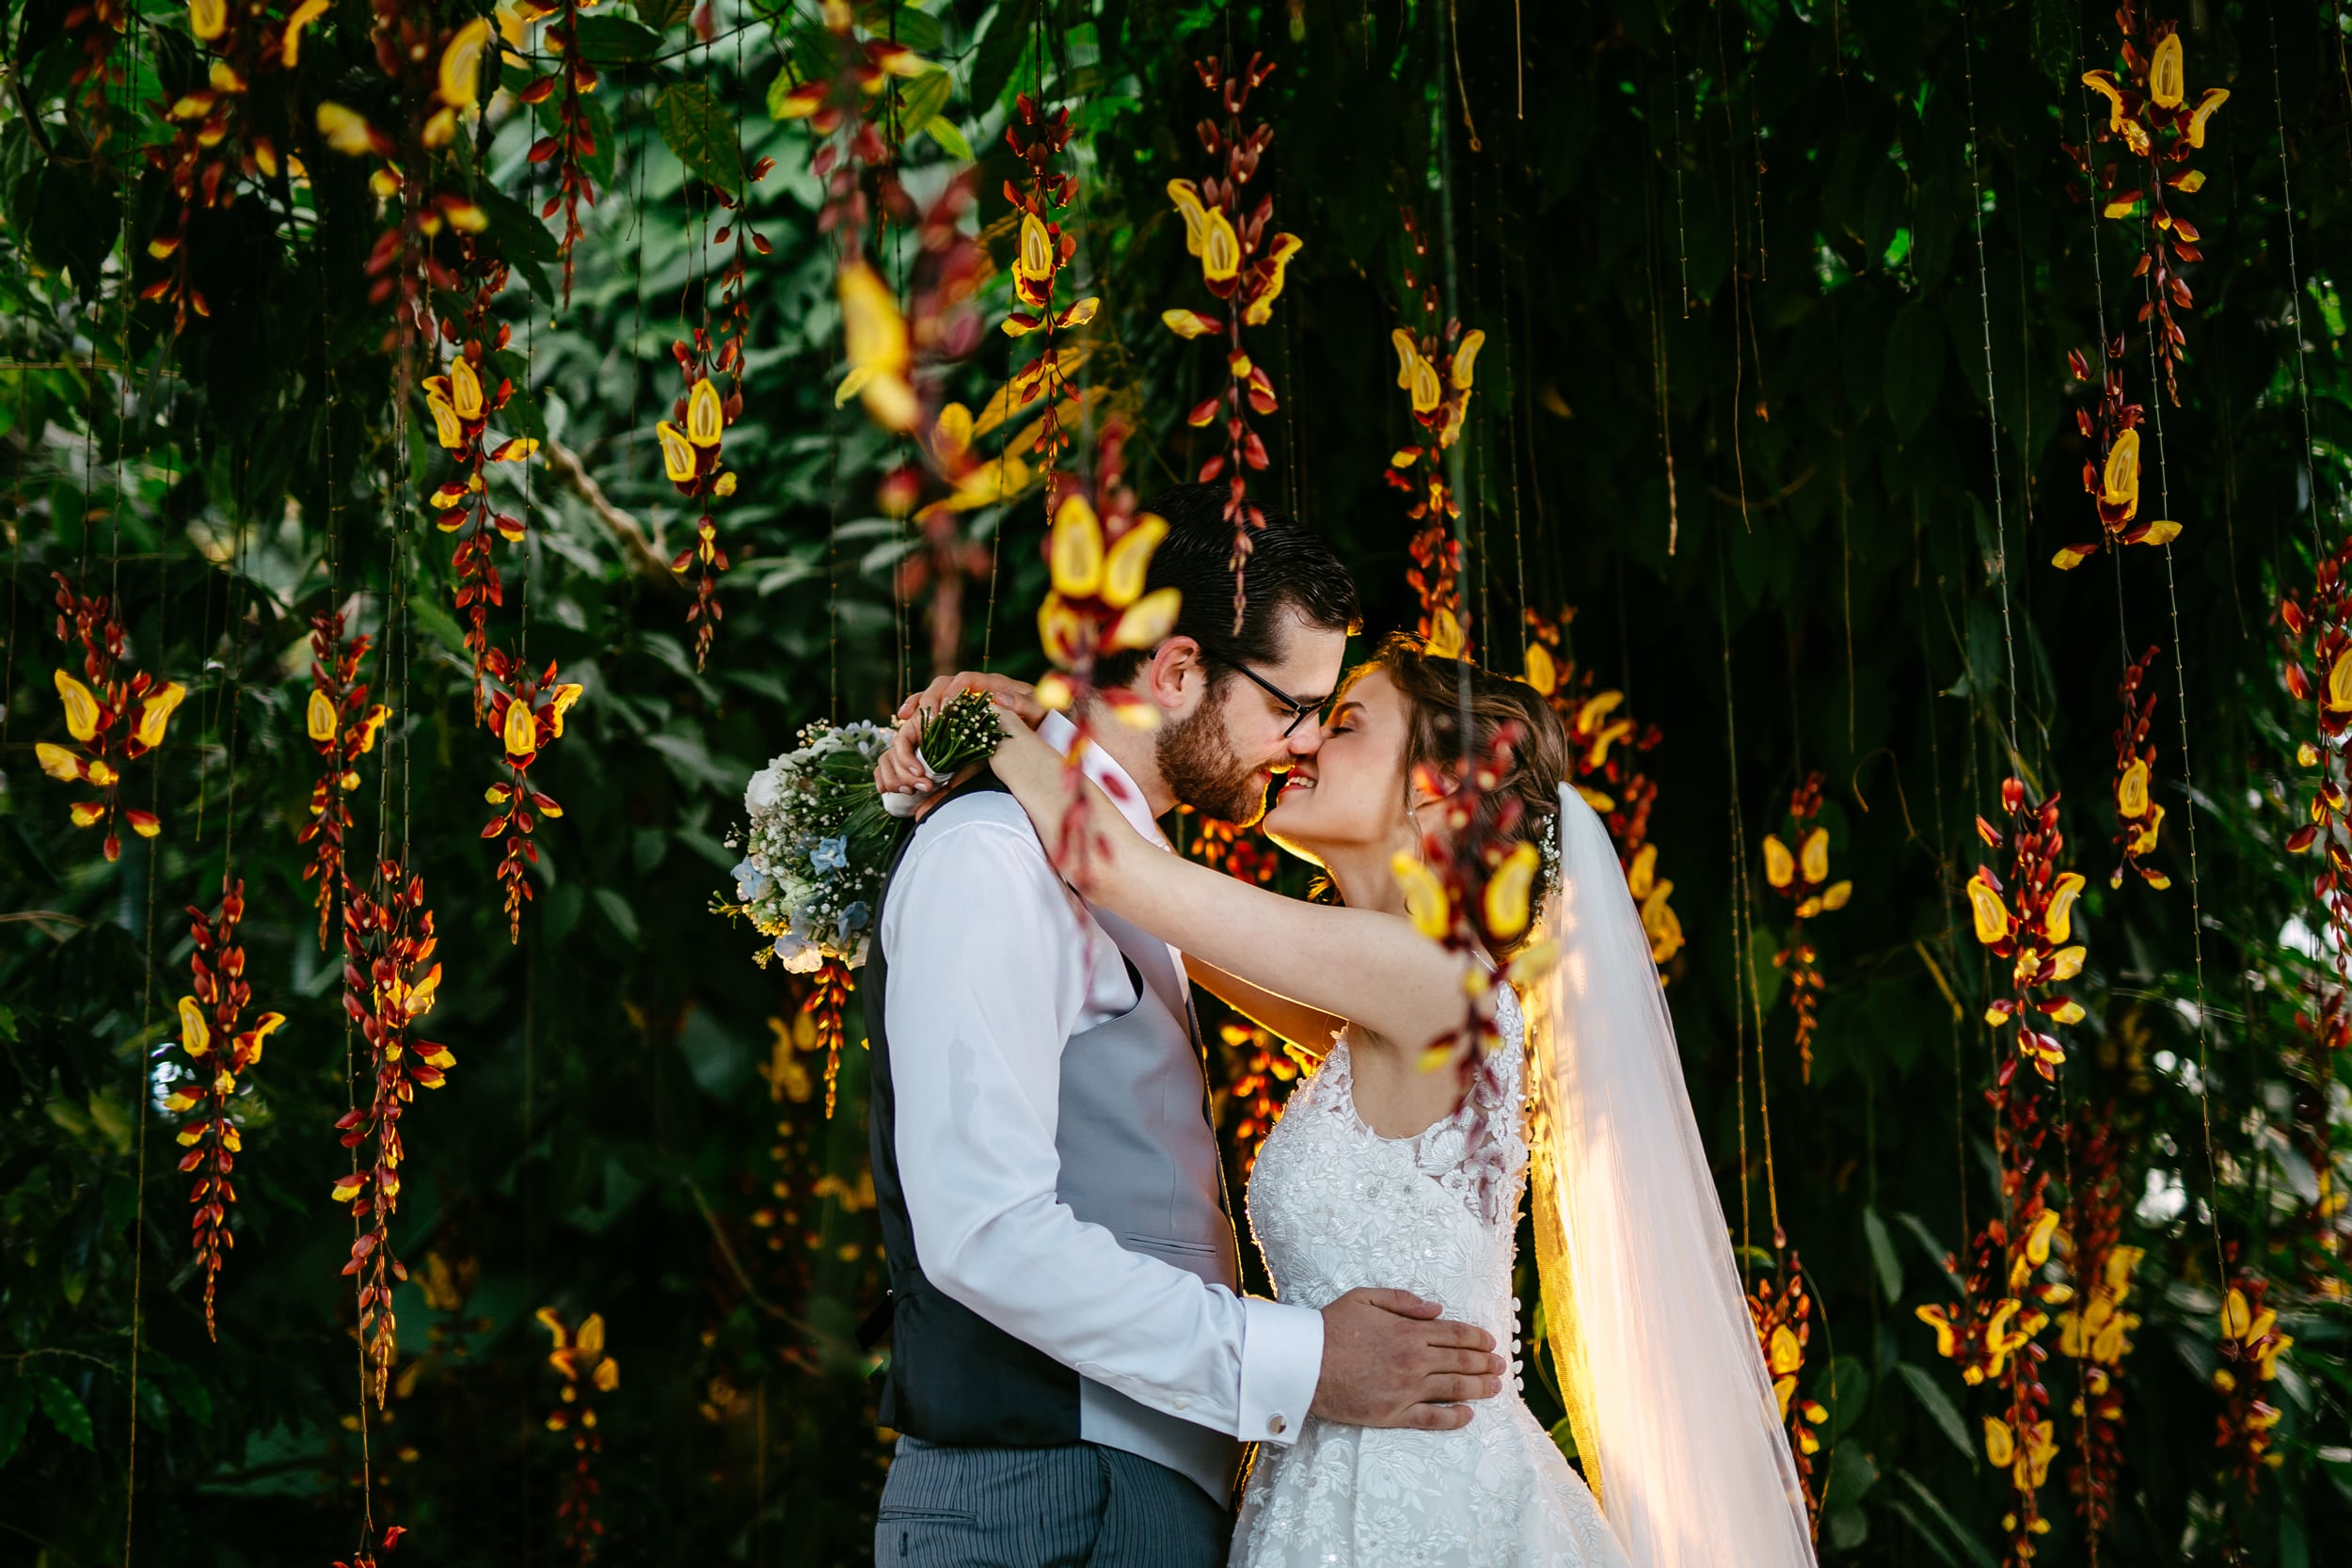 Beschrijving: Een bruid en bruidegom omhelzen elkaar voor een prachtige bloementuin tijdens hun huwelijksthemaceremonie.